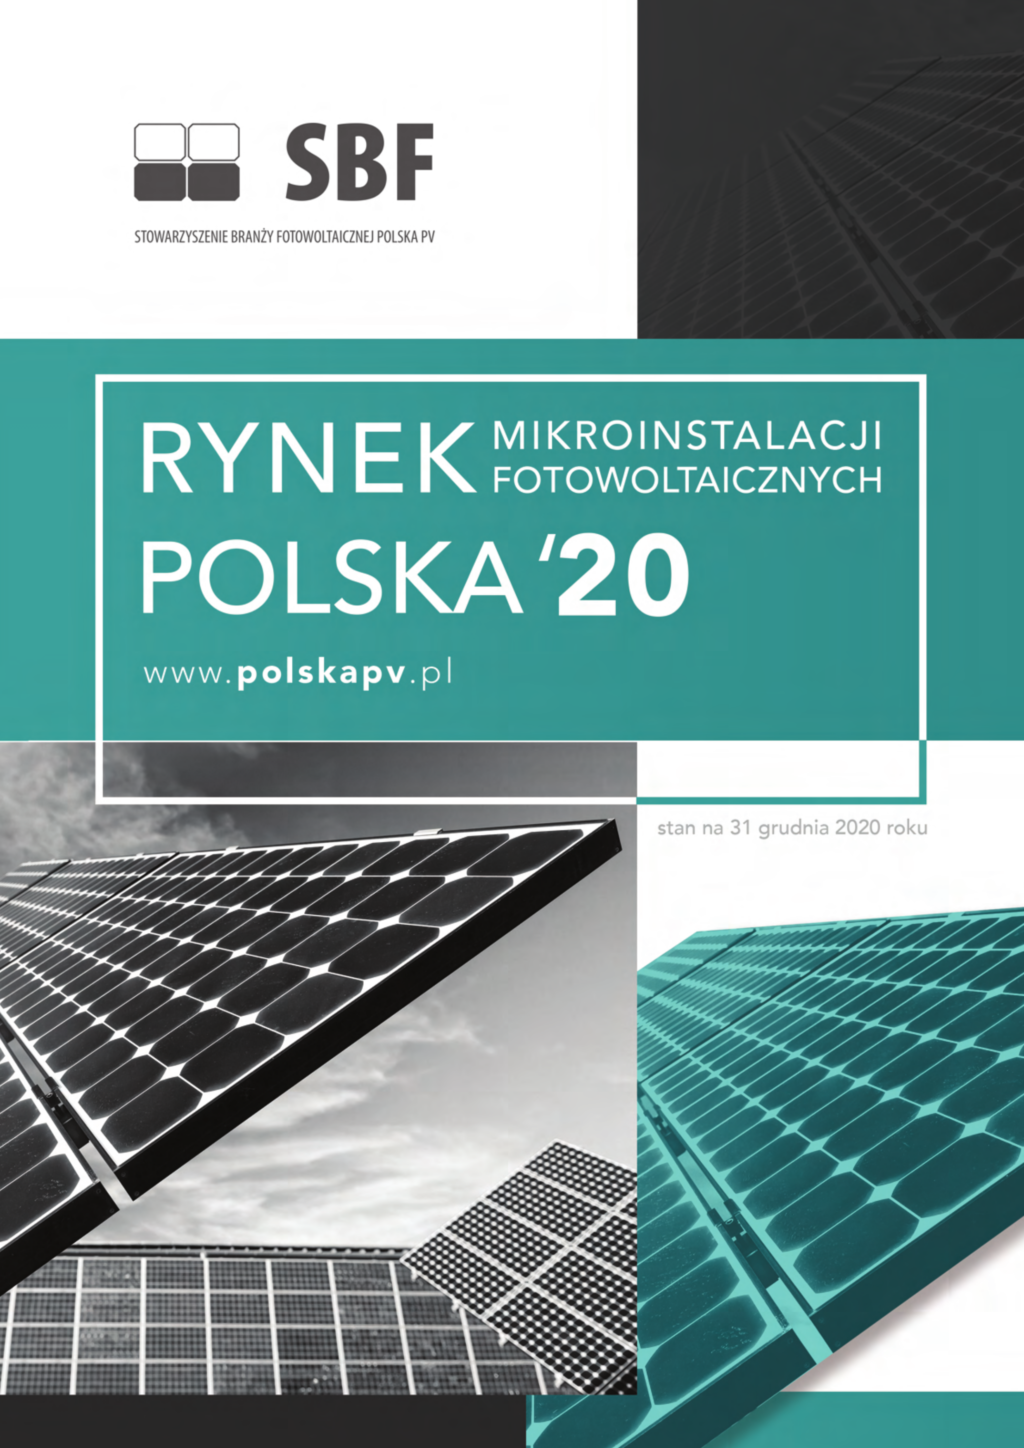 Rynek Mikroinstalacji Fotowoltaicznych POLSKA 2020